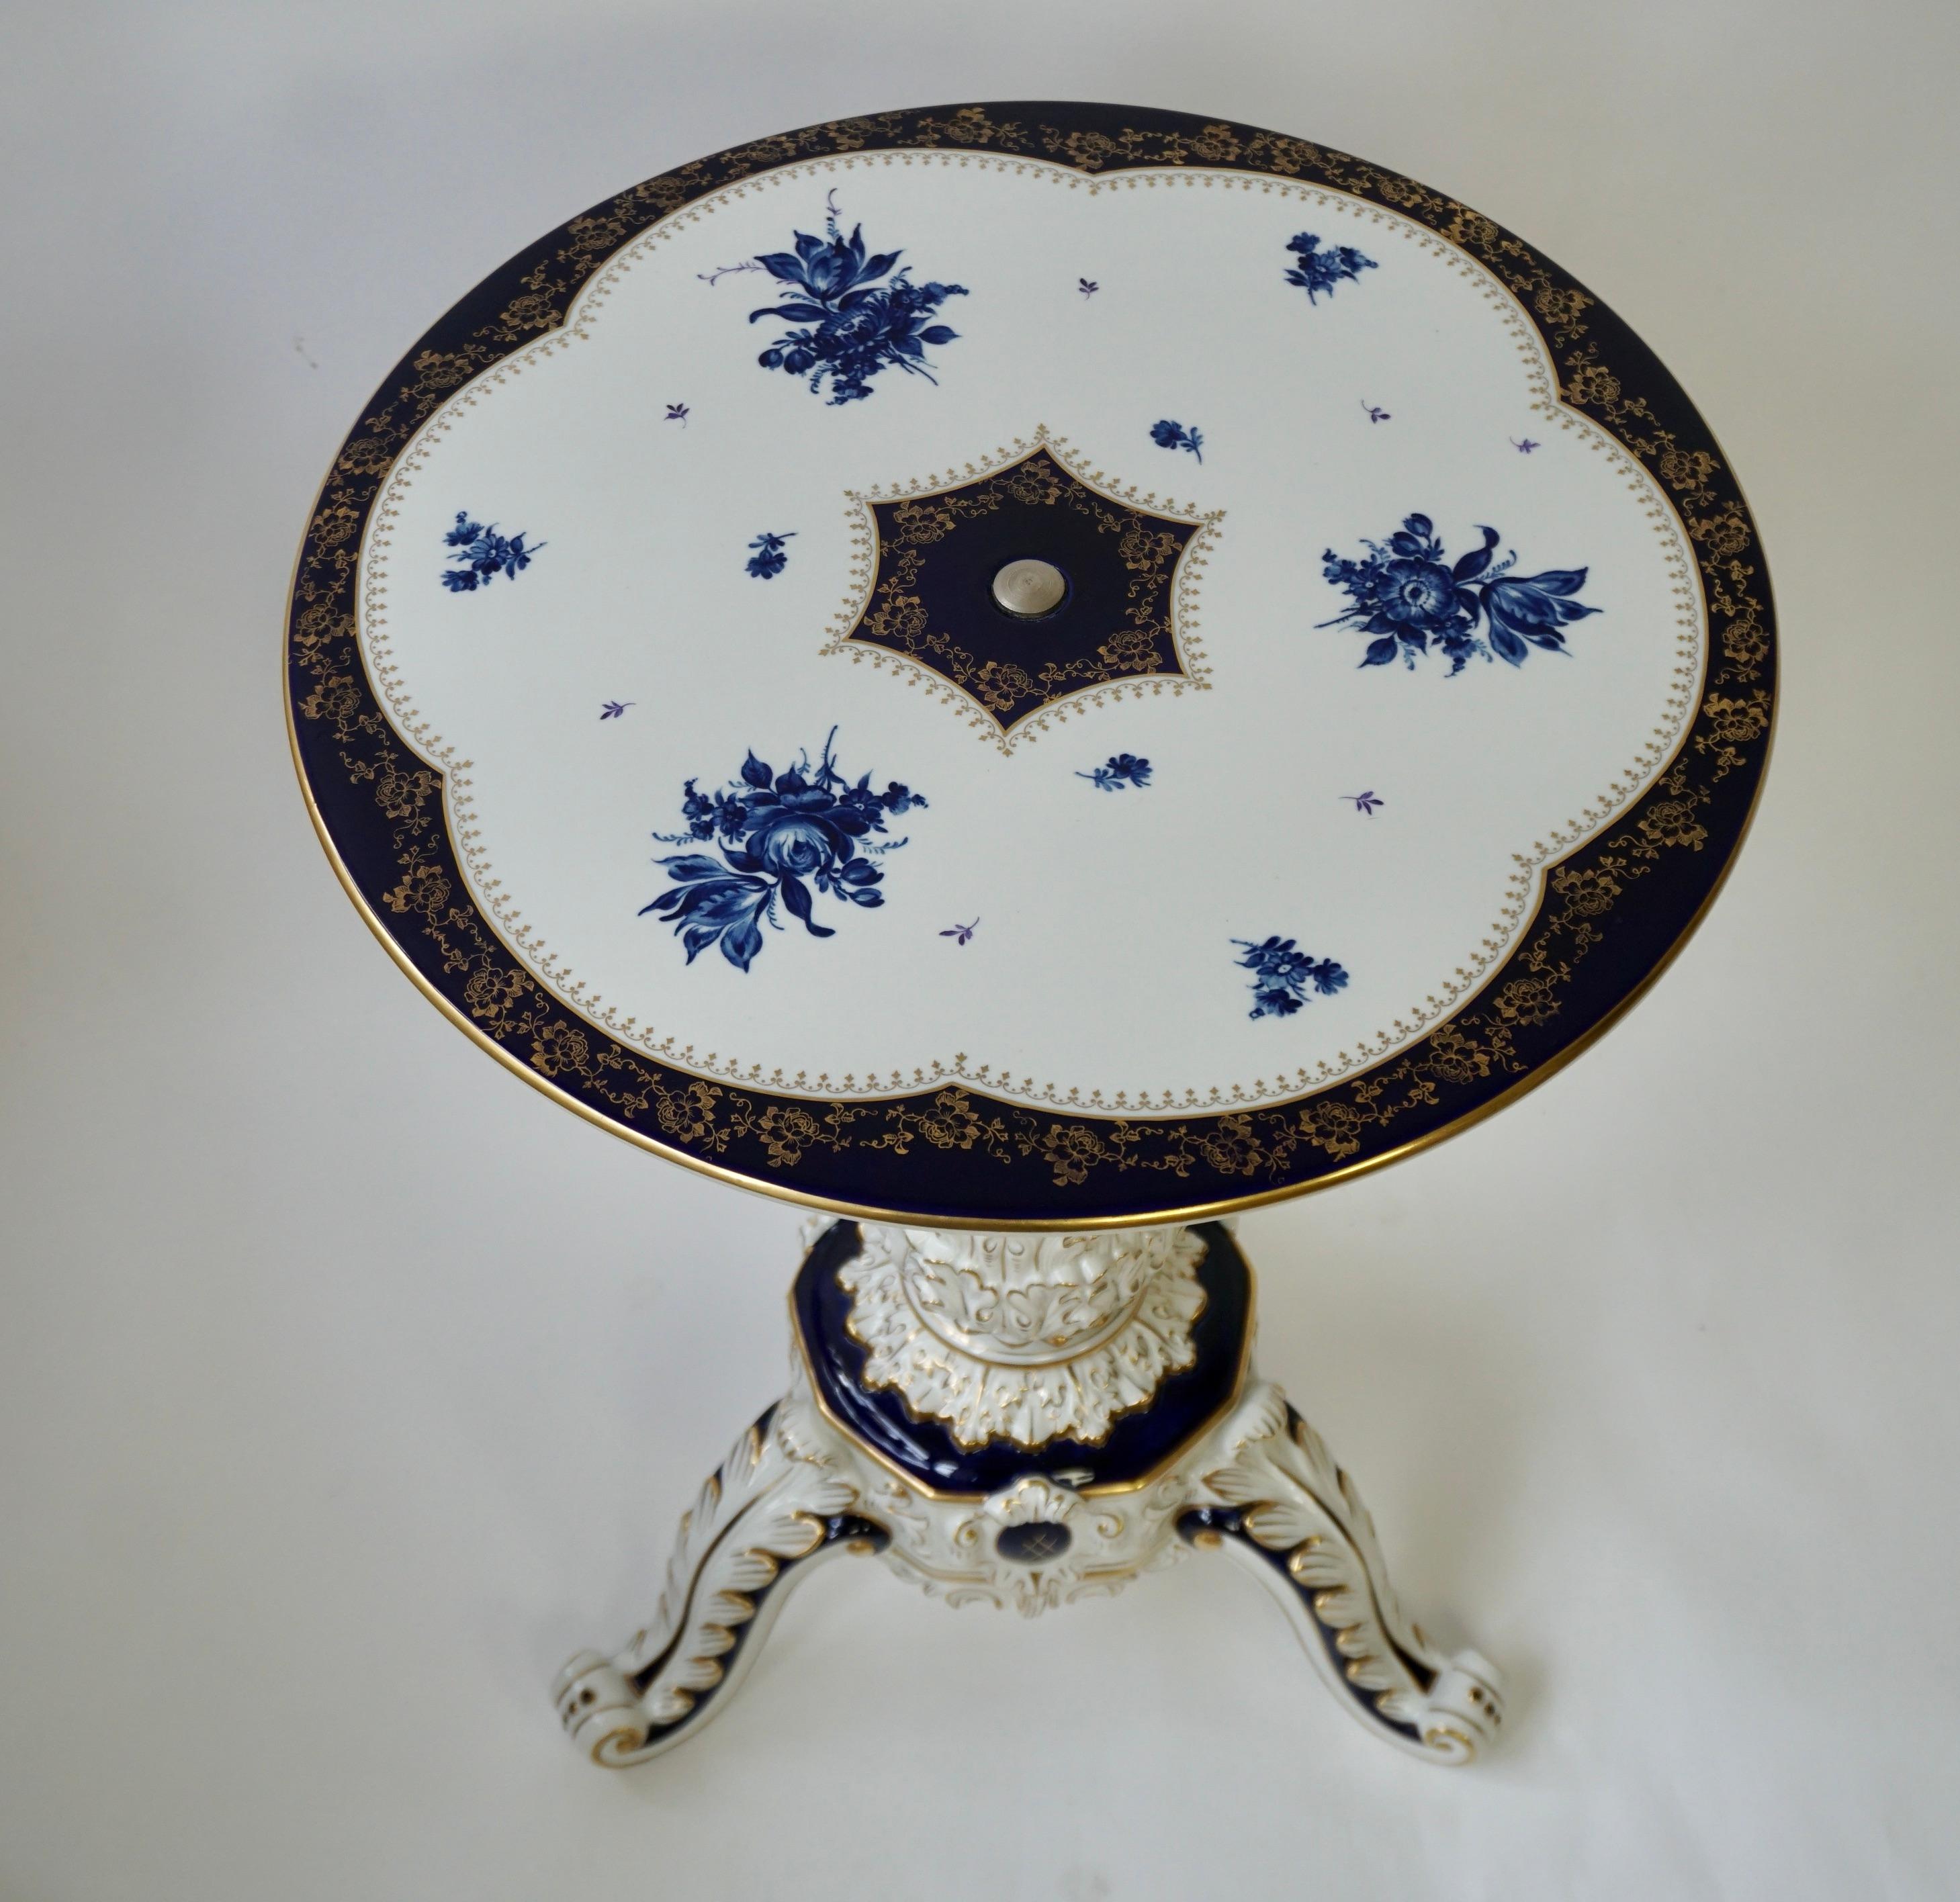 Table basse vintage en porcelaine cobalt de style rococo.  

Signature de l'Artistics
RMR 1817 Dresde, Allemagne.   

Décoration florale peinte à la main en bleu cobalt et or sur fond blanc.   

La porcelaine peinte avec de la peinture au cobalt se